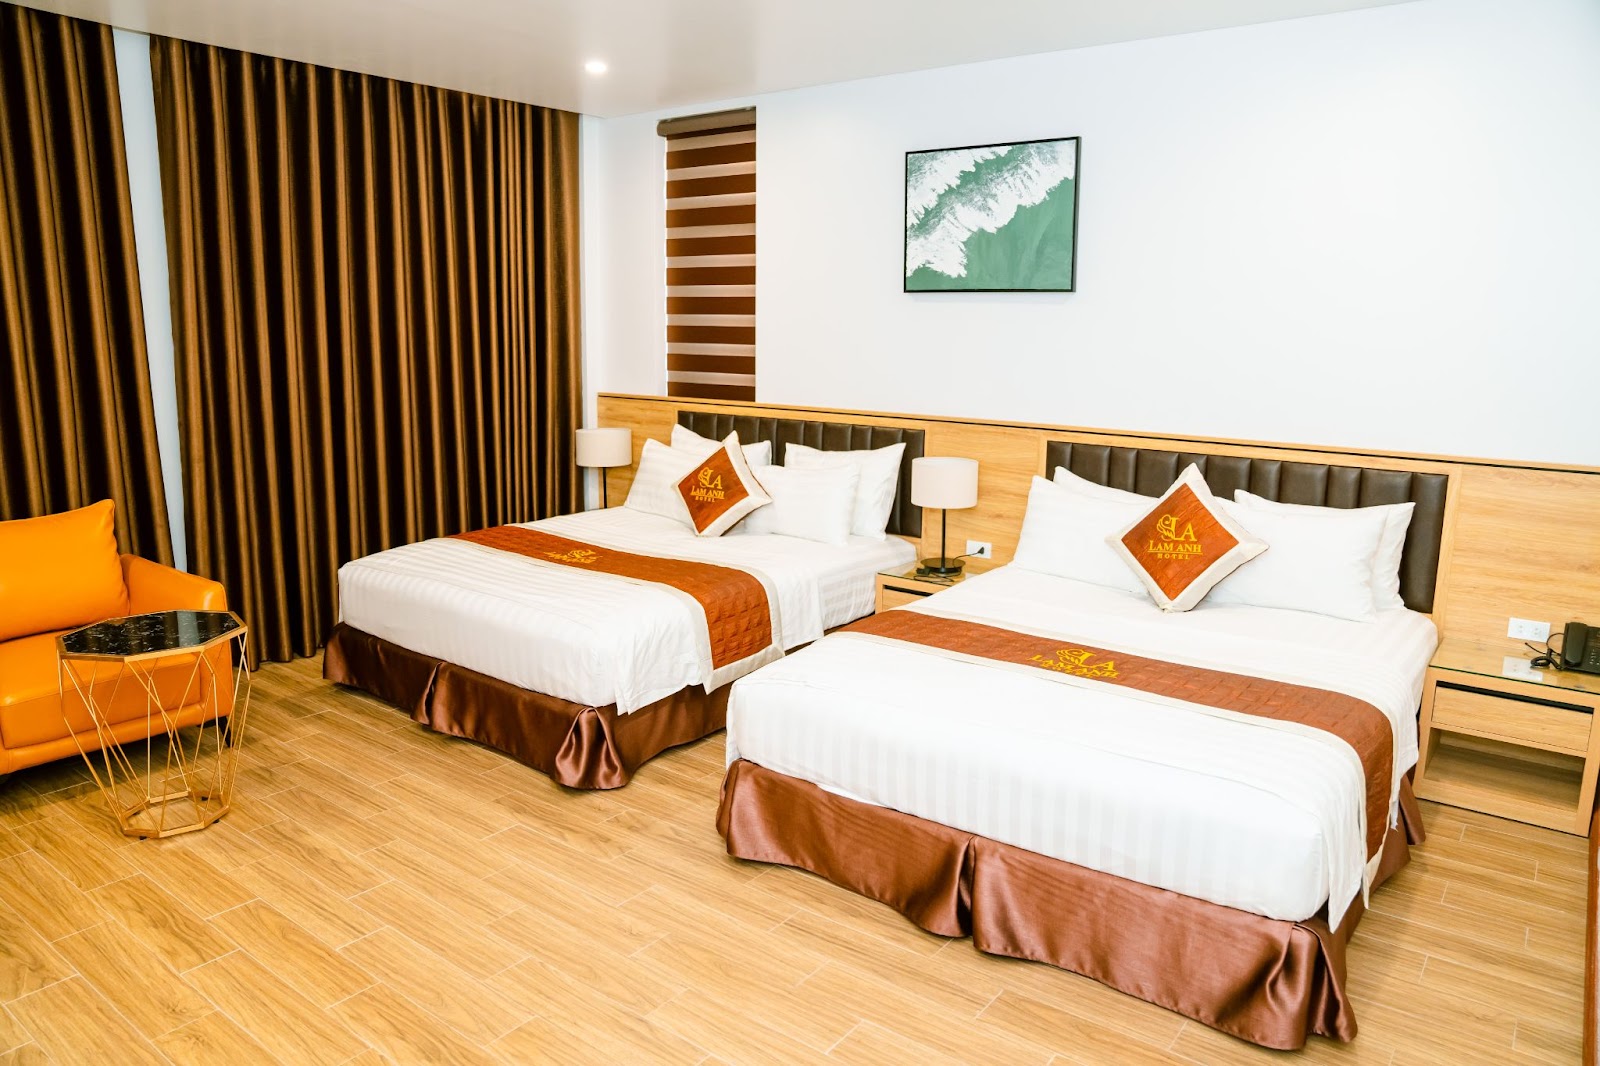 Lam Anh Hotel cung cấp đa dạng các loại phòng nghỉ cho khách hàng